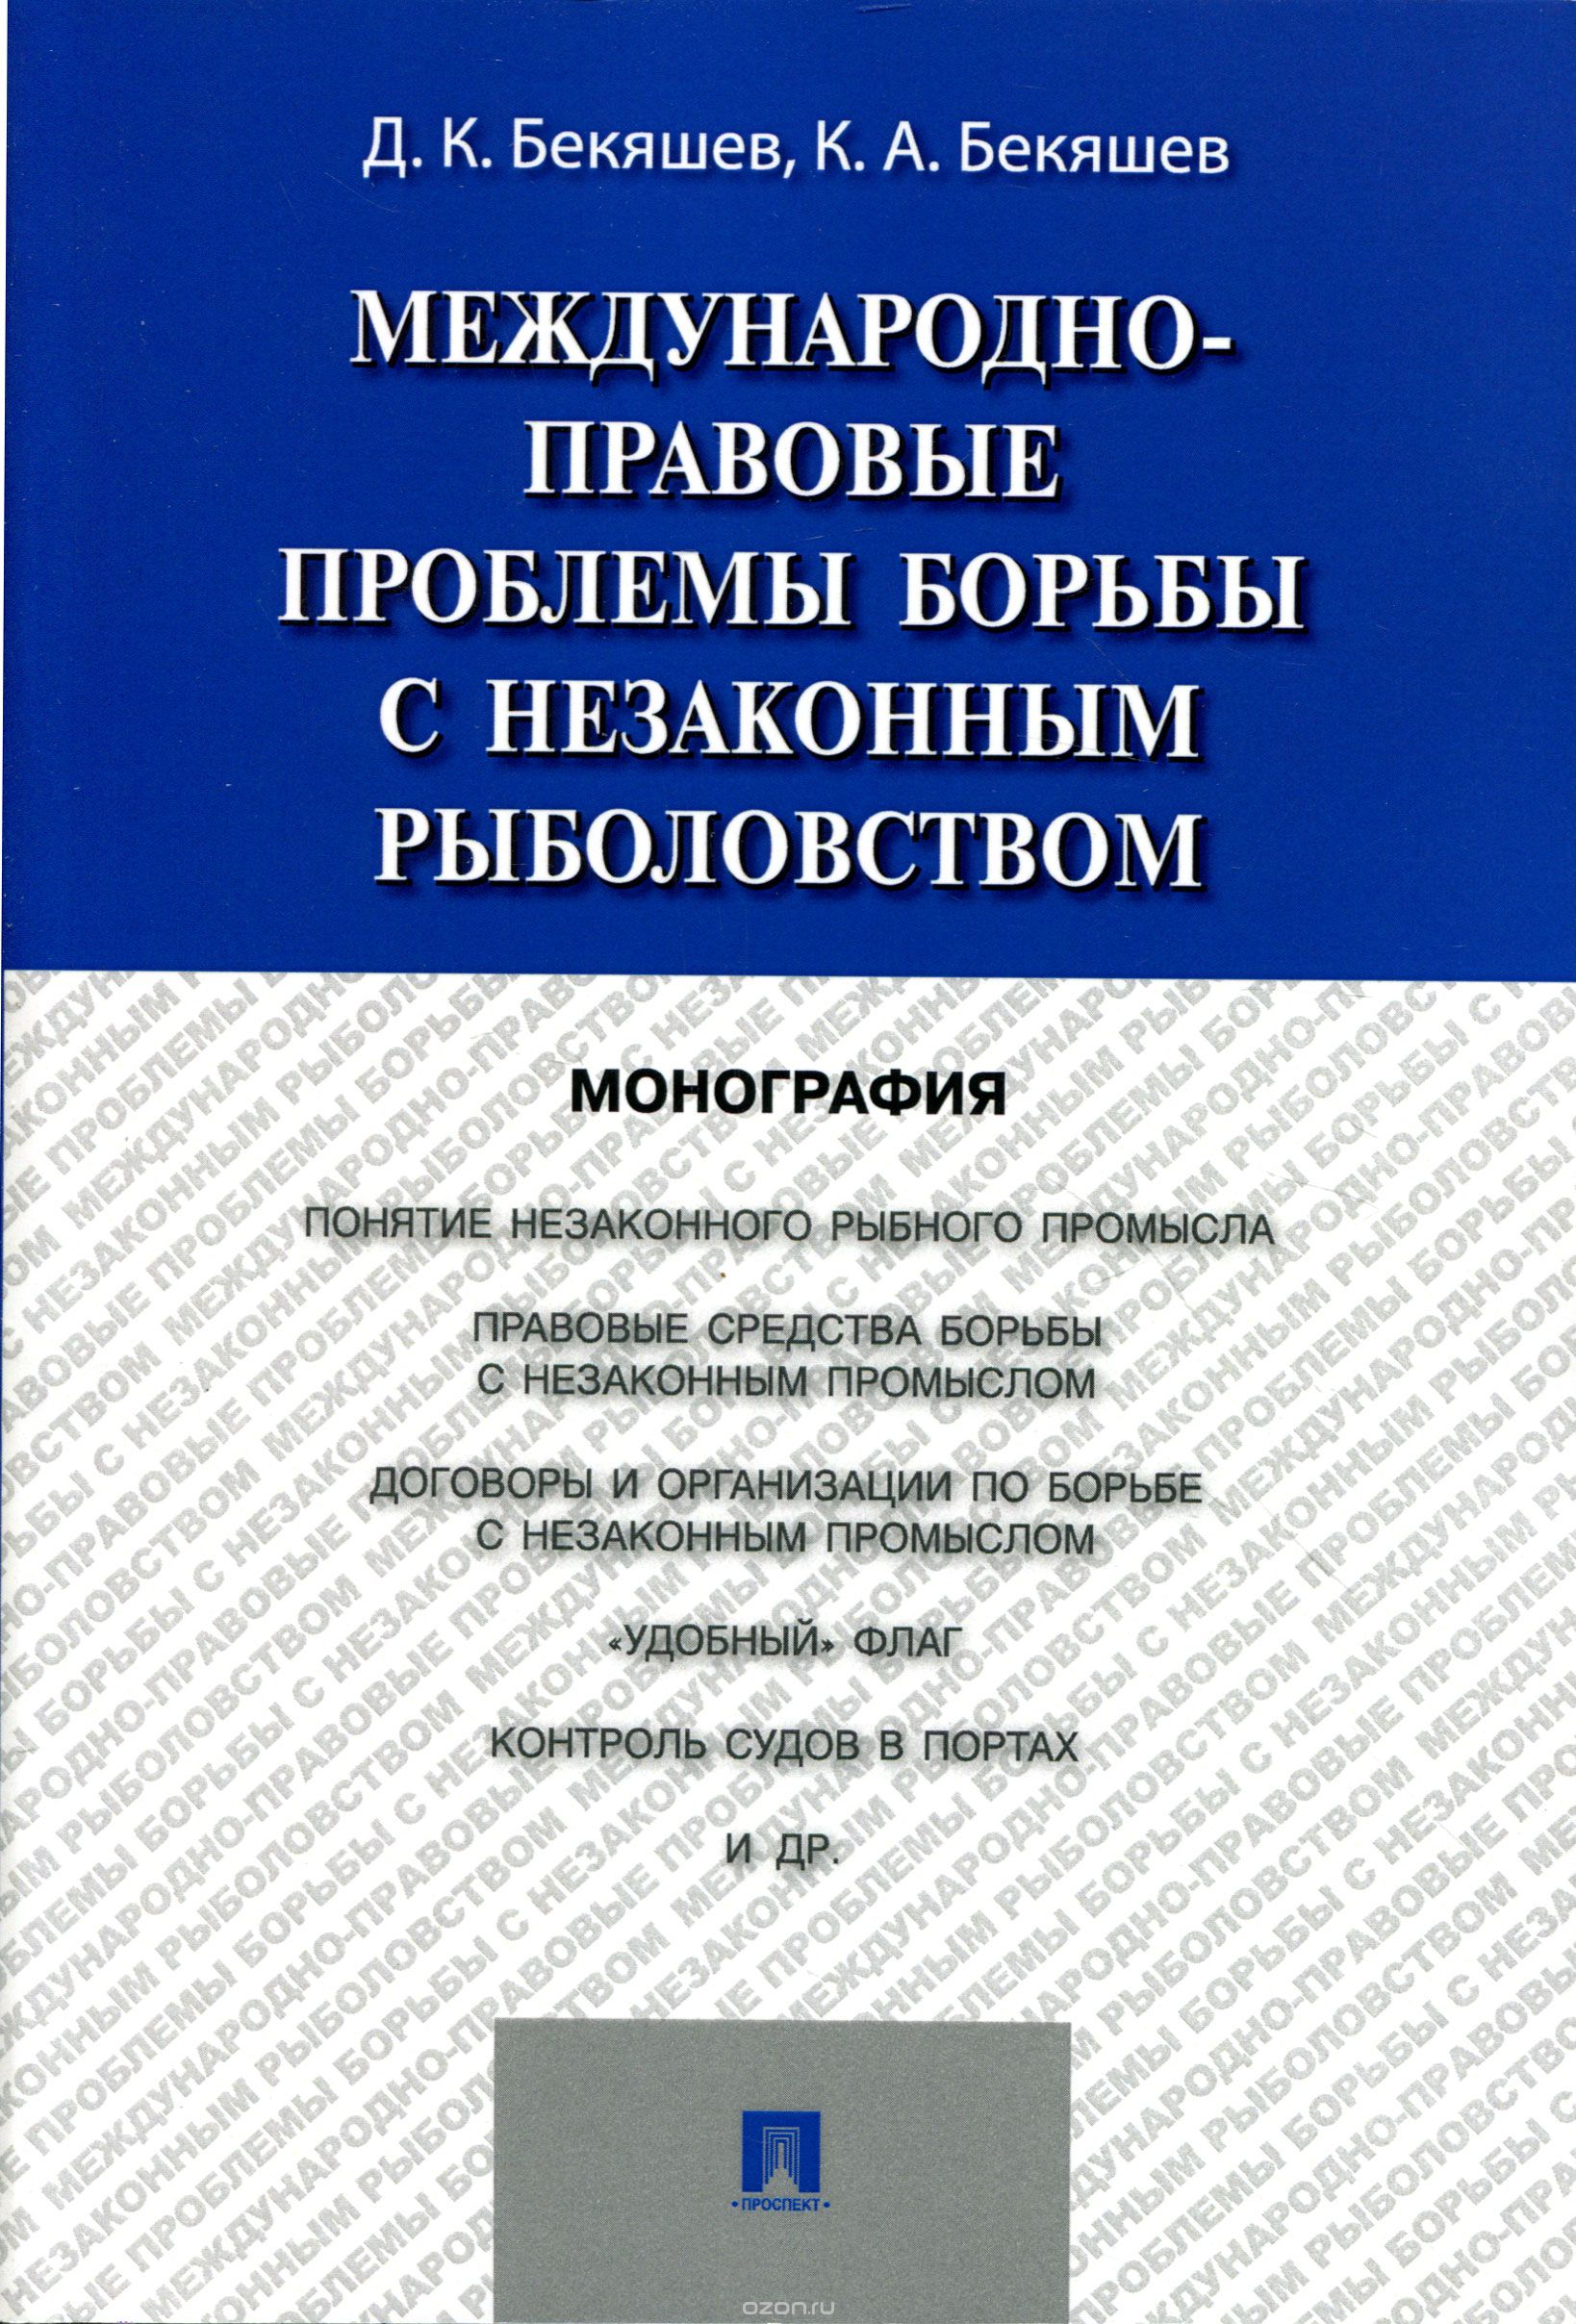 Скачать книгу "Международно-правовые проблемы борьбы с незаконным рыболовством, Д. К. Бекяшев, К. А. Бекяшев"